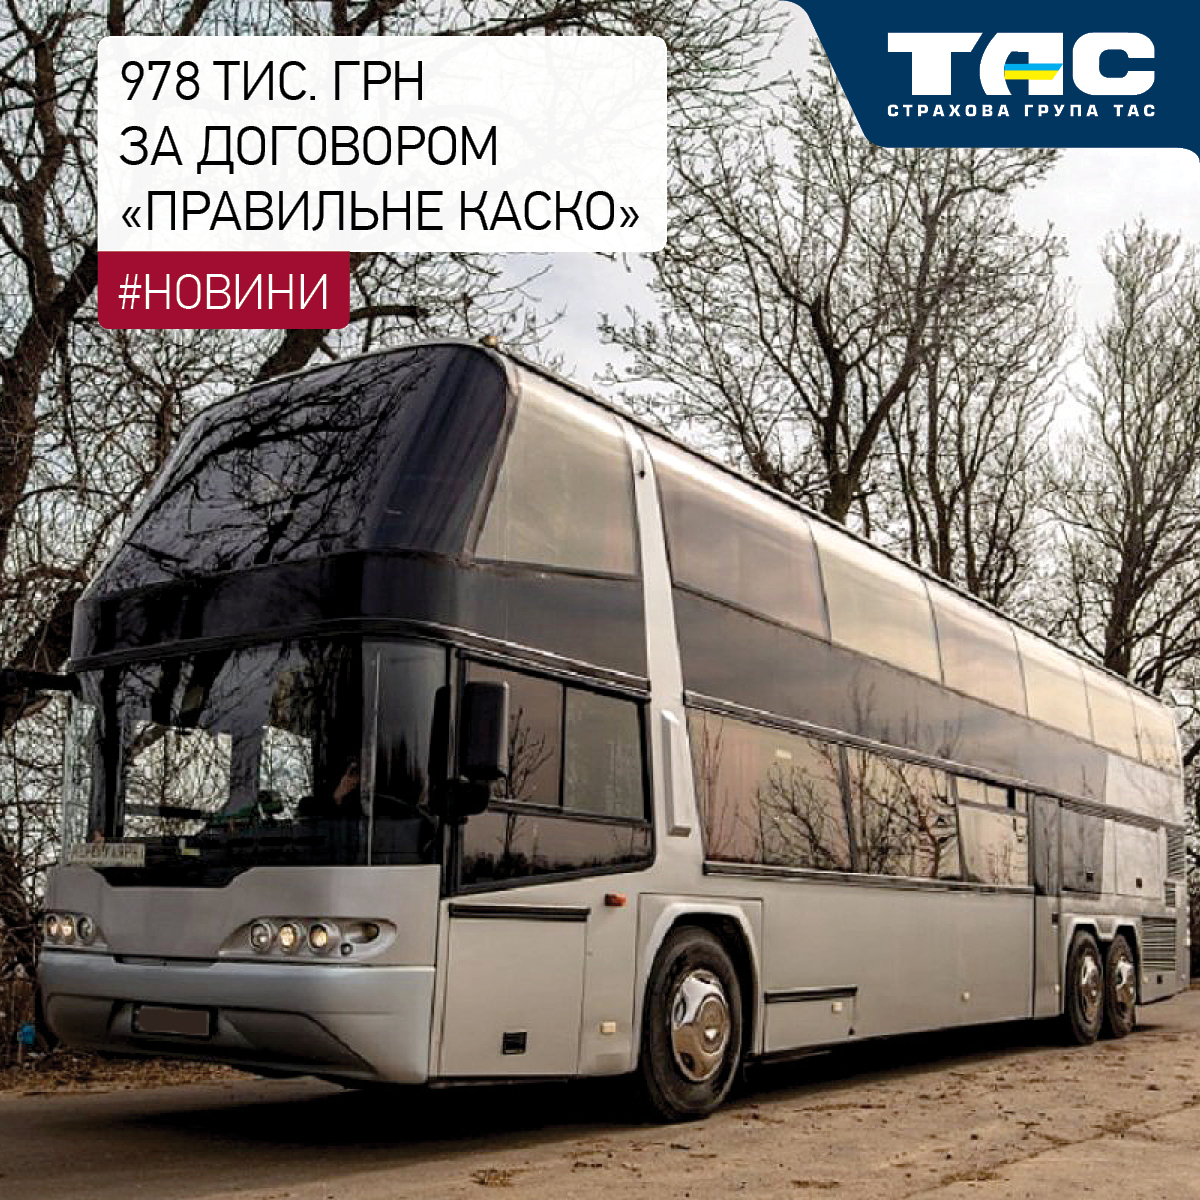 СГ «ТАС» виплатила 978 тис. грн за пошкоджений в Словаччині автобус